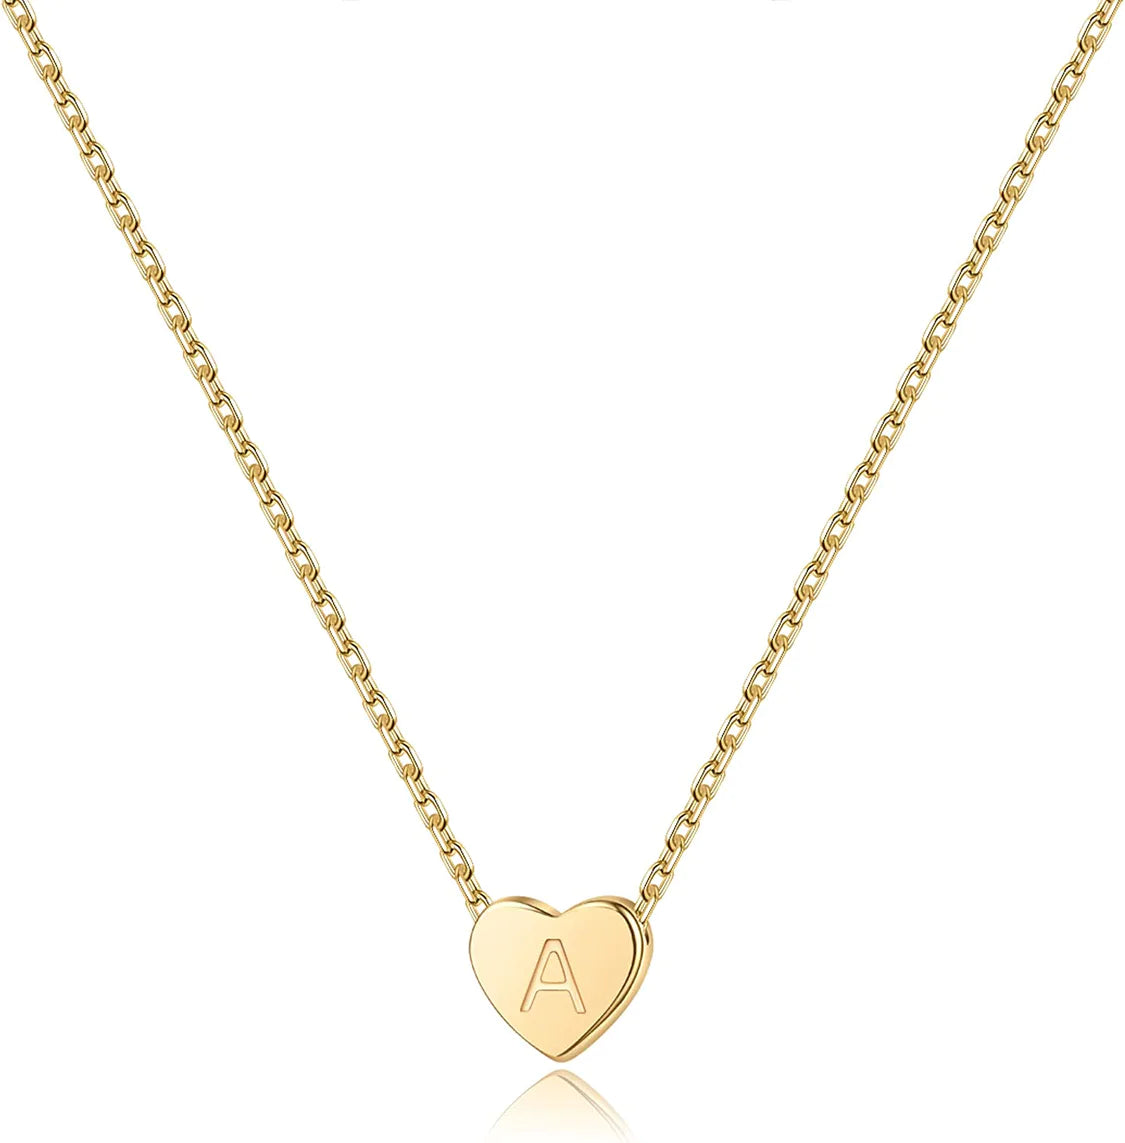 Elegante herzförmige 26-Buchstaben-Halskette für Frauen-zarter Liebeskupferanhänger mit modischer Schlüsselbeinkette